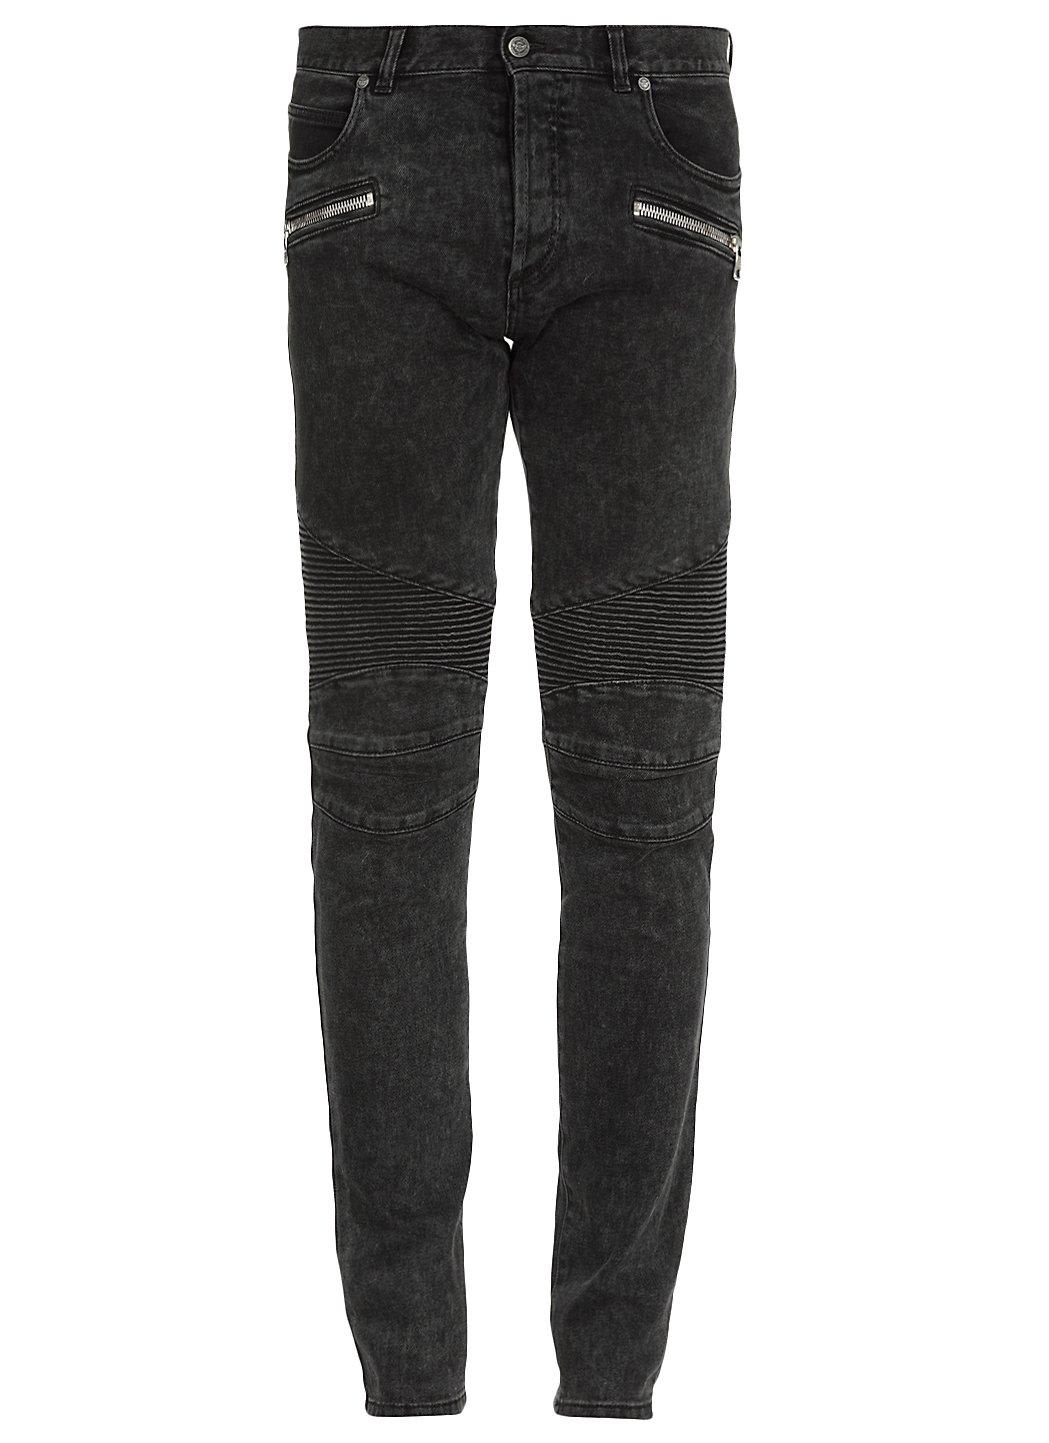 Balmain Zip Detailed Slim Fit Jeans